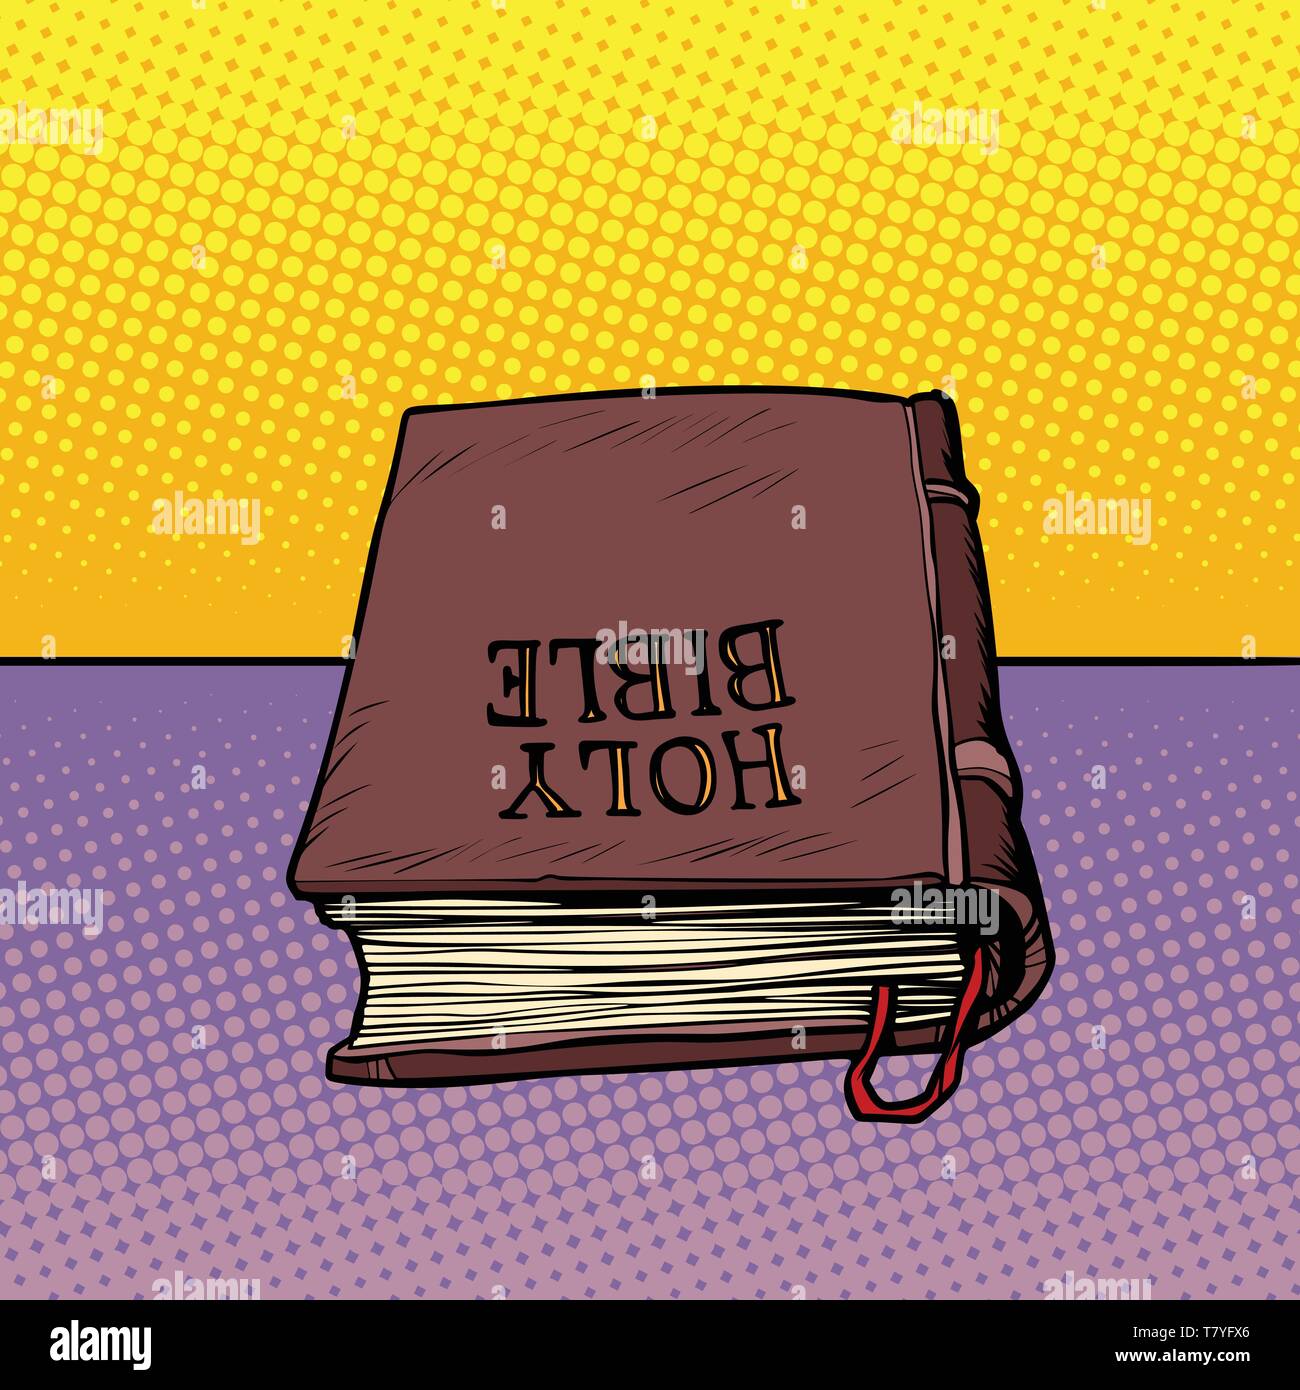 Heilige Bibel Buch. Christentum und Religion. Comic cartoon Pop Art Illustration vintage Vektor-zeichnung Stock Vektor